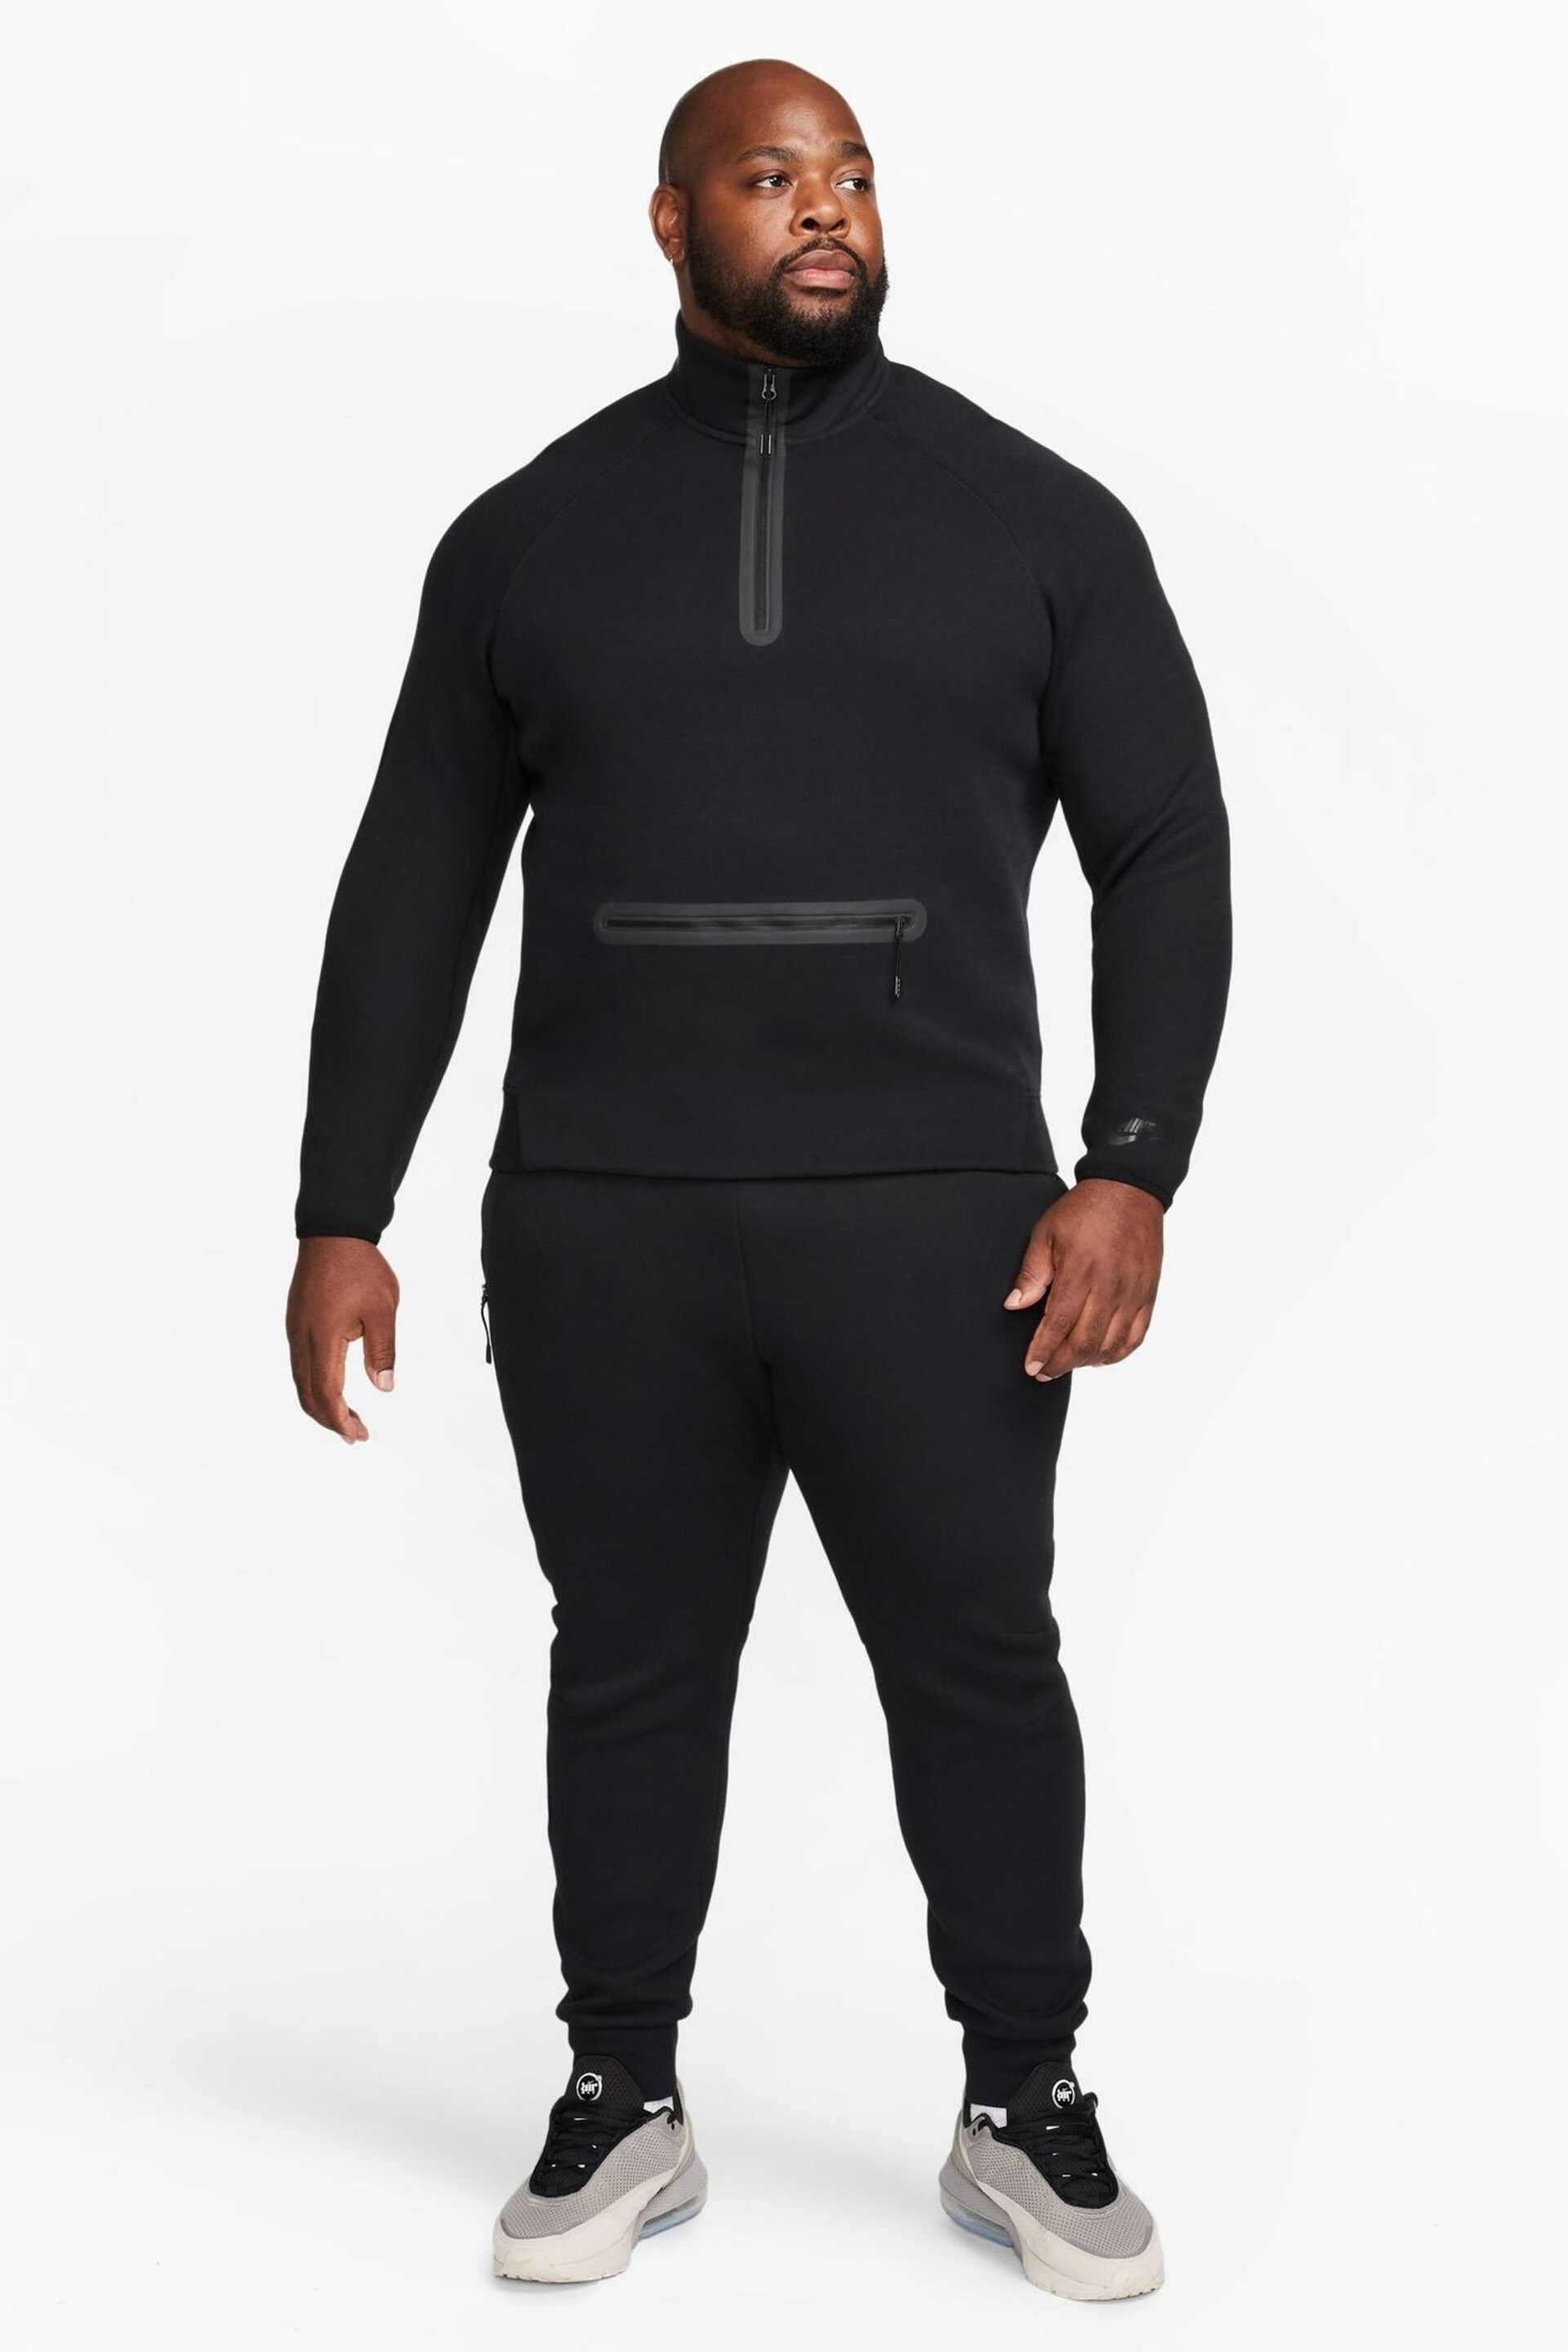 Nike Black Tech Fleece Half Zip Sweatshirt - Image 19 of 19